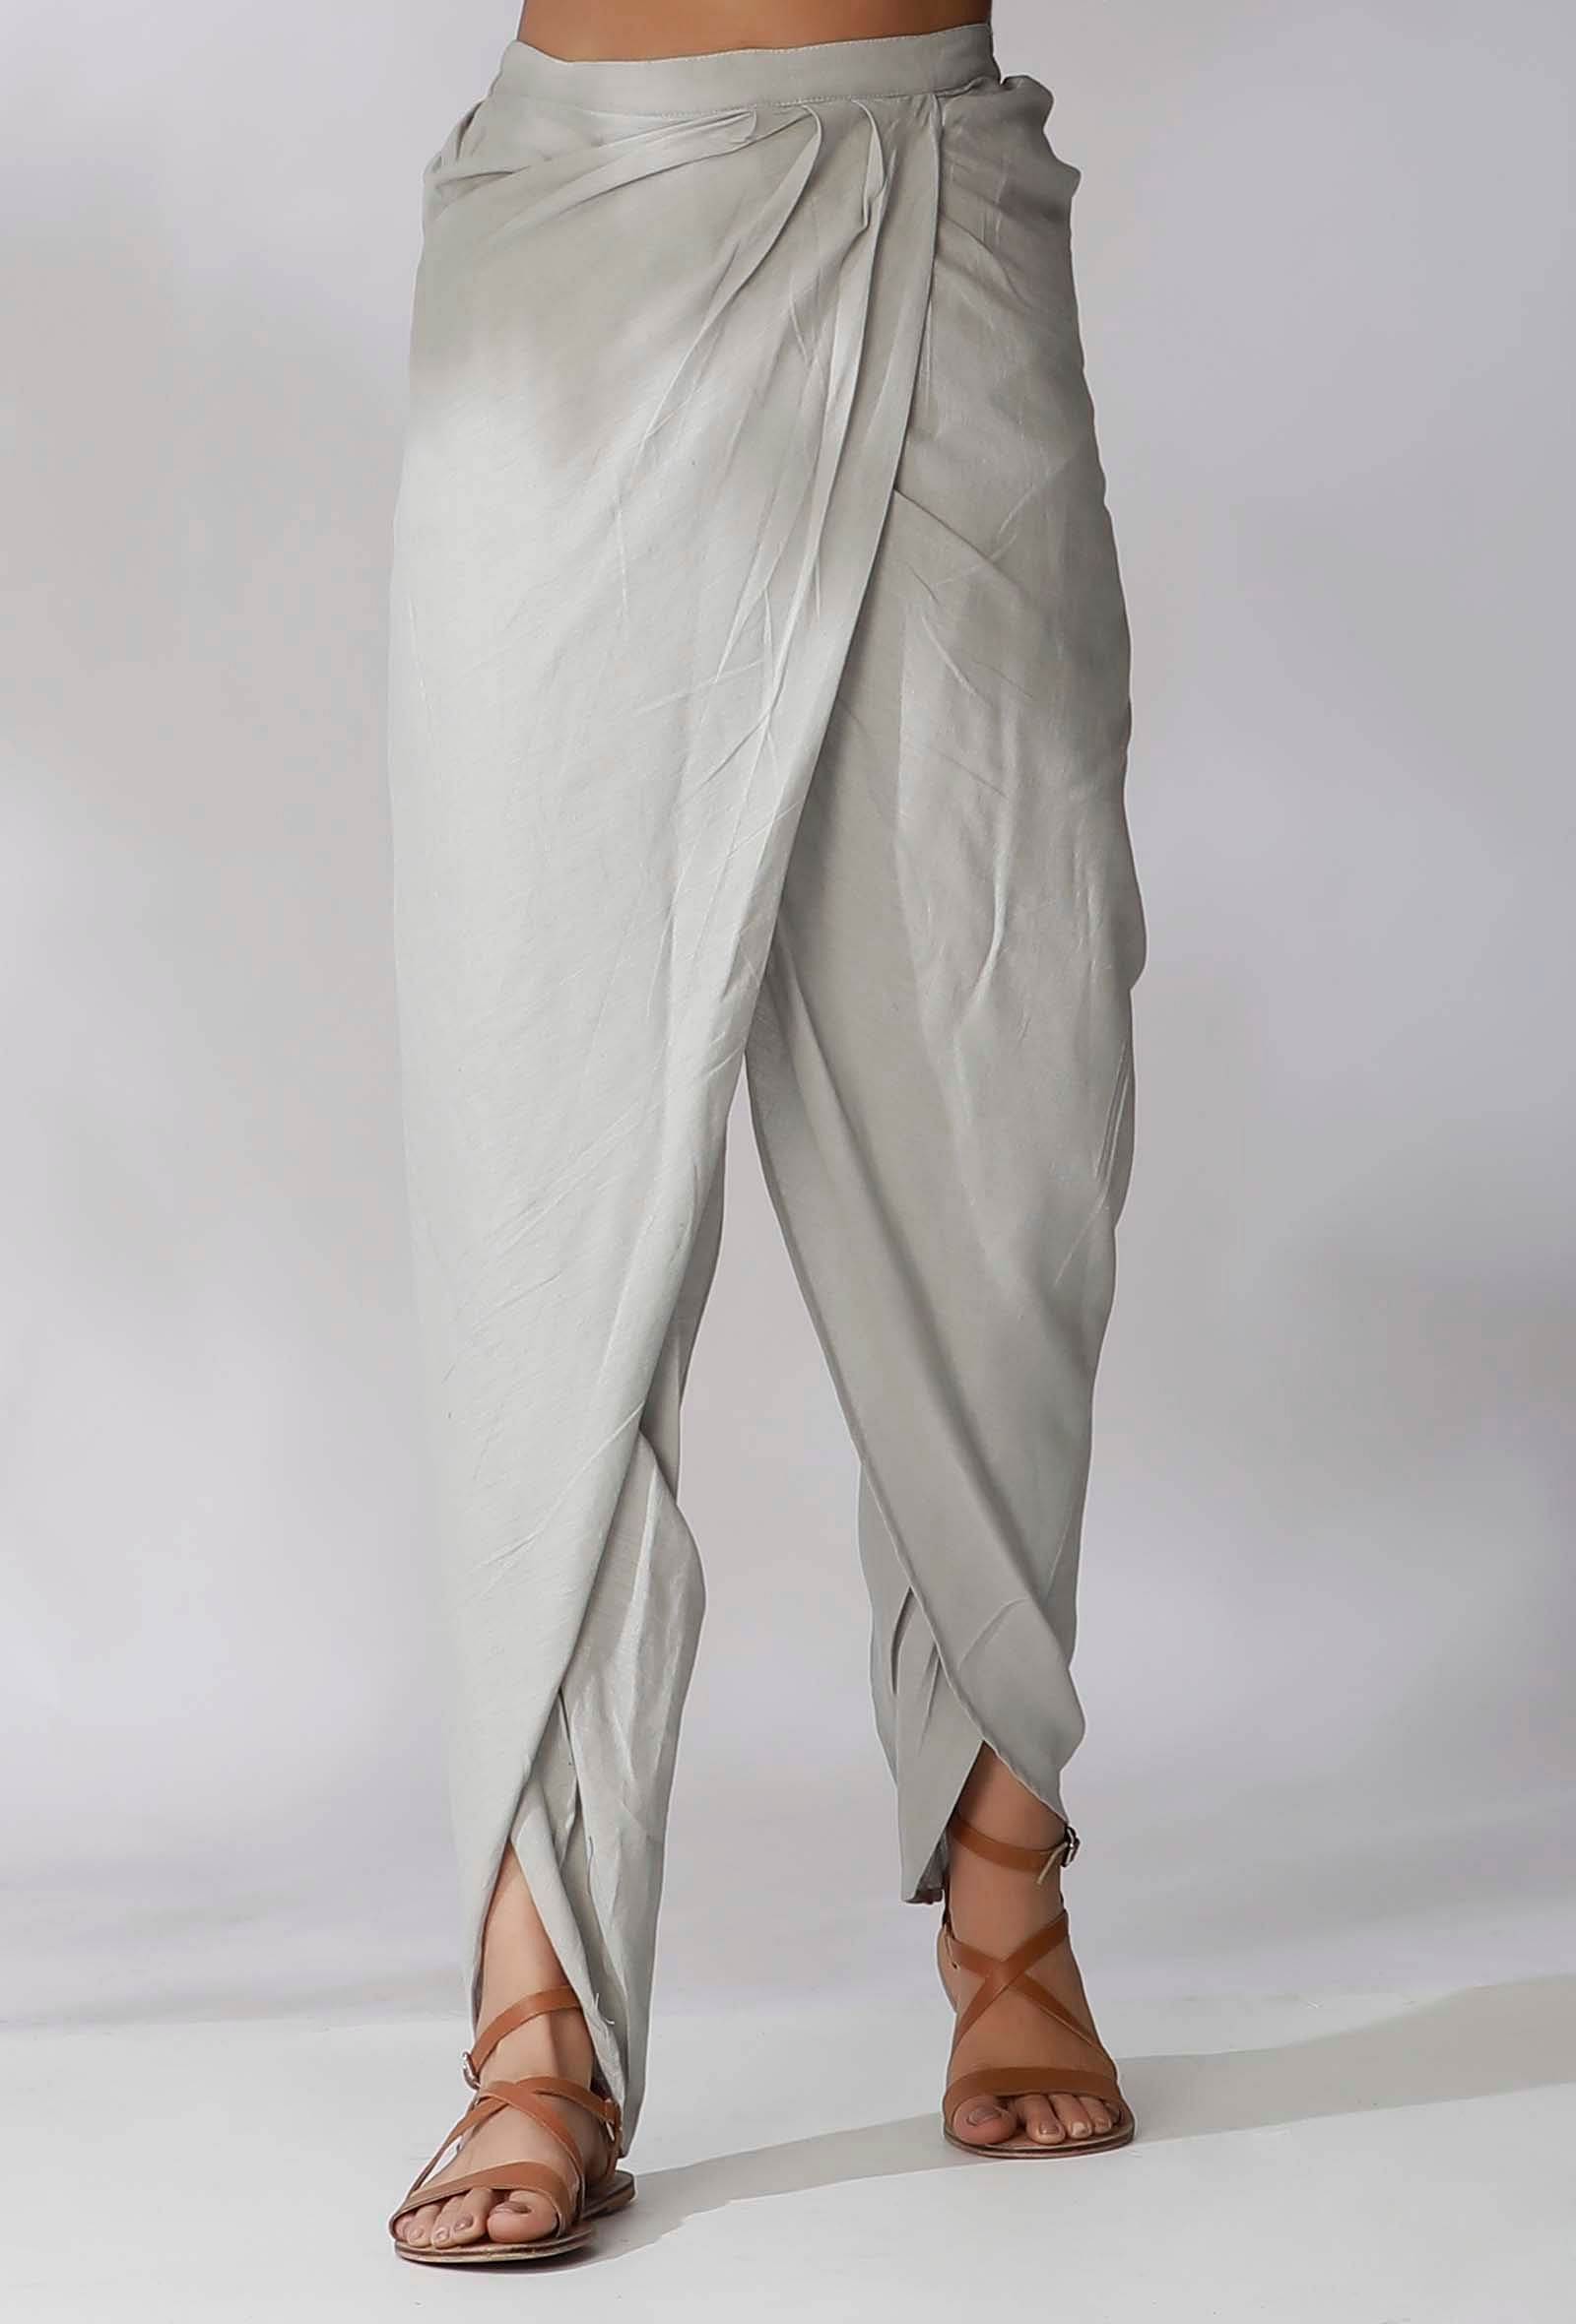 Buy Vasstram Black Modal Satin Dhoti Pants For Women Available online at  ScrollnShops